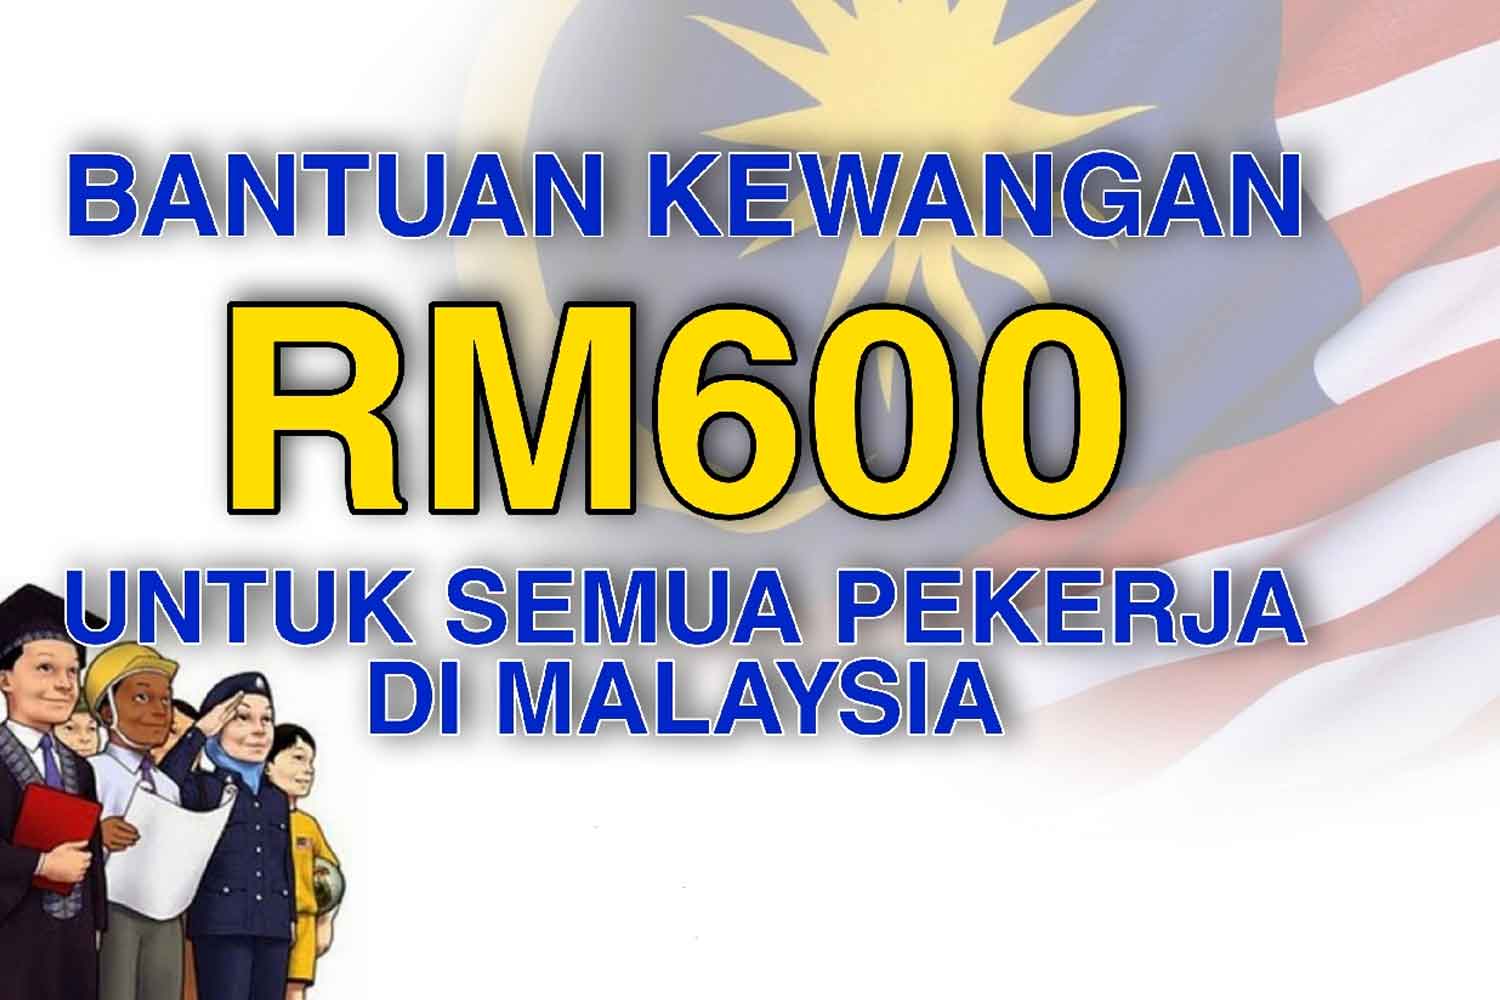 Bantuan RM600 sebulan untuk semua pekerja, ramai yang belum mohon